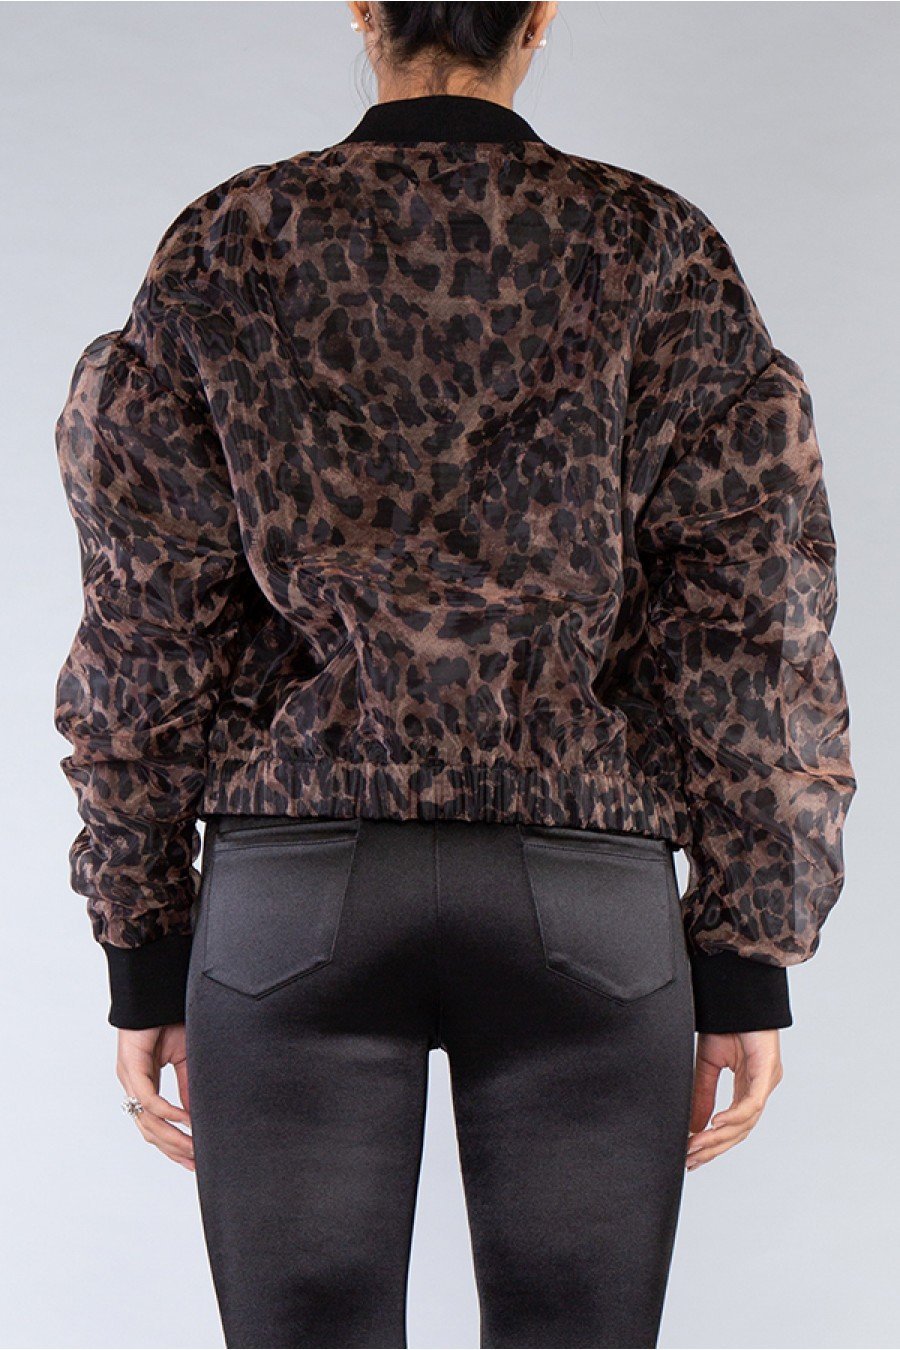 Leopard Jacket – Boutique